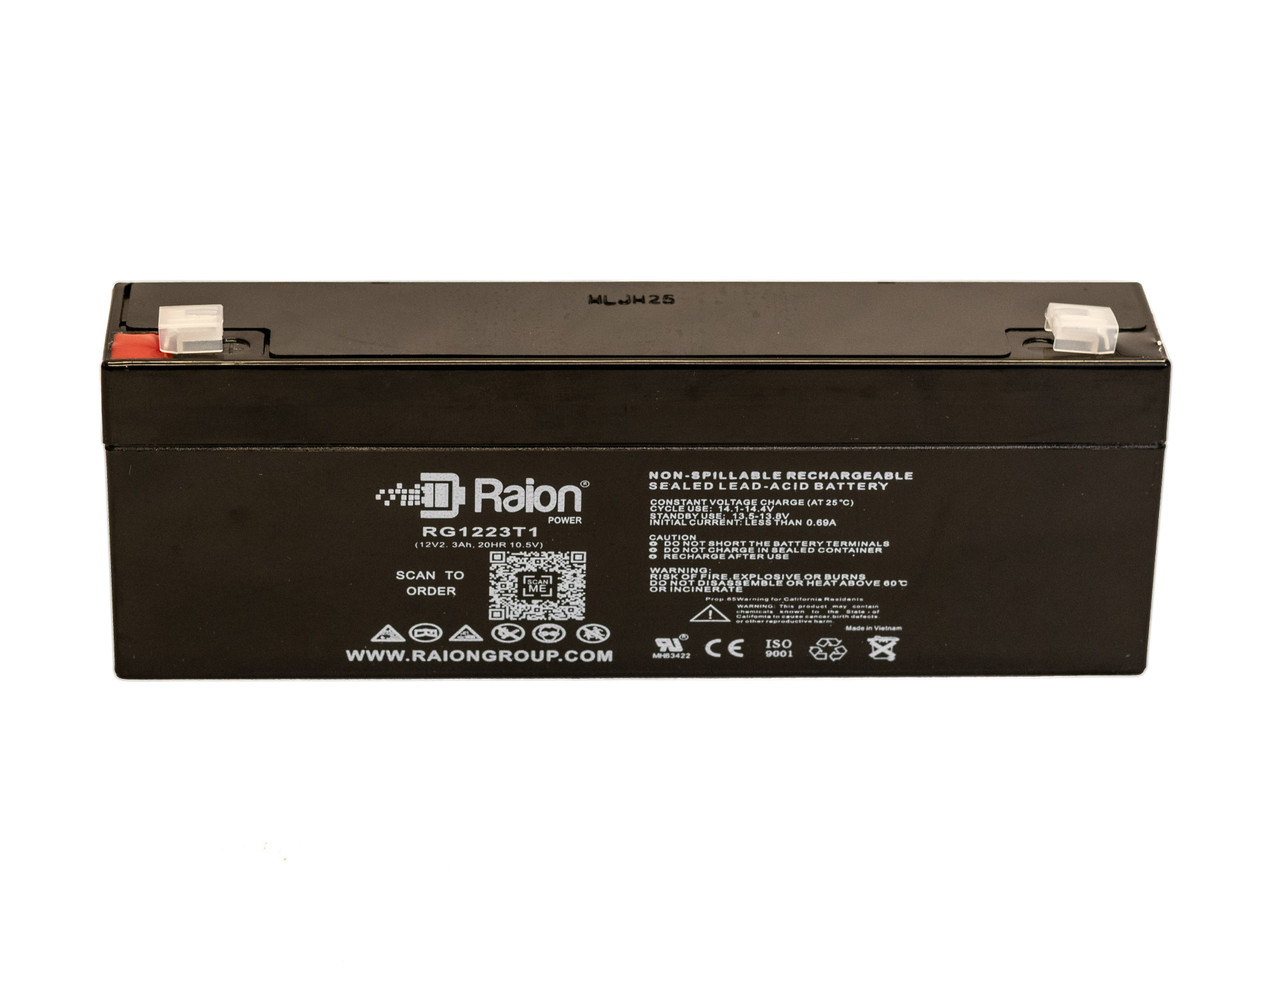 Raion Power 12V 2.3Ah SLA Battery With T1 Terminals For Picker International Pulsar 3 Defibrillator